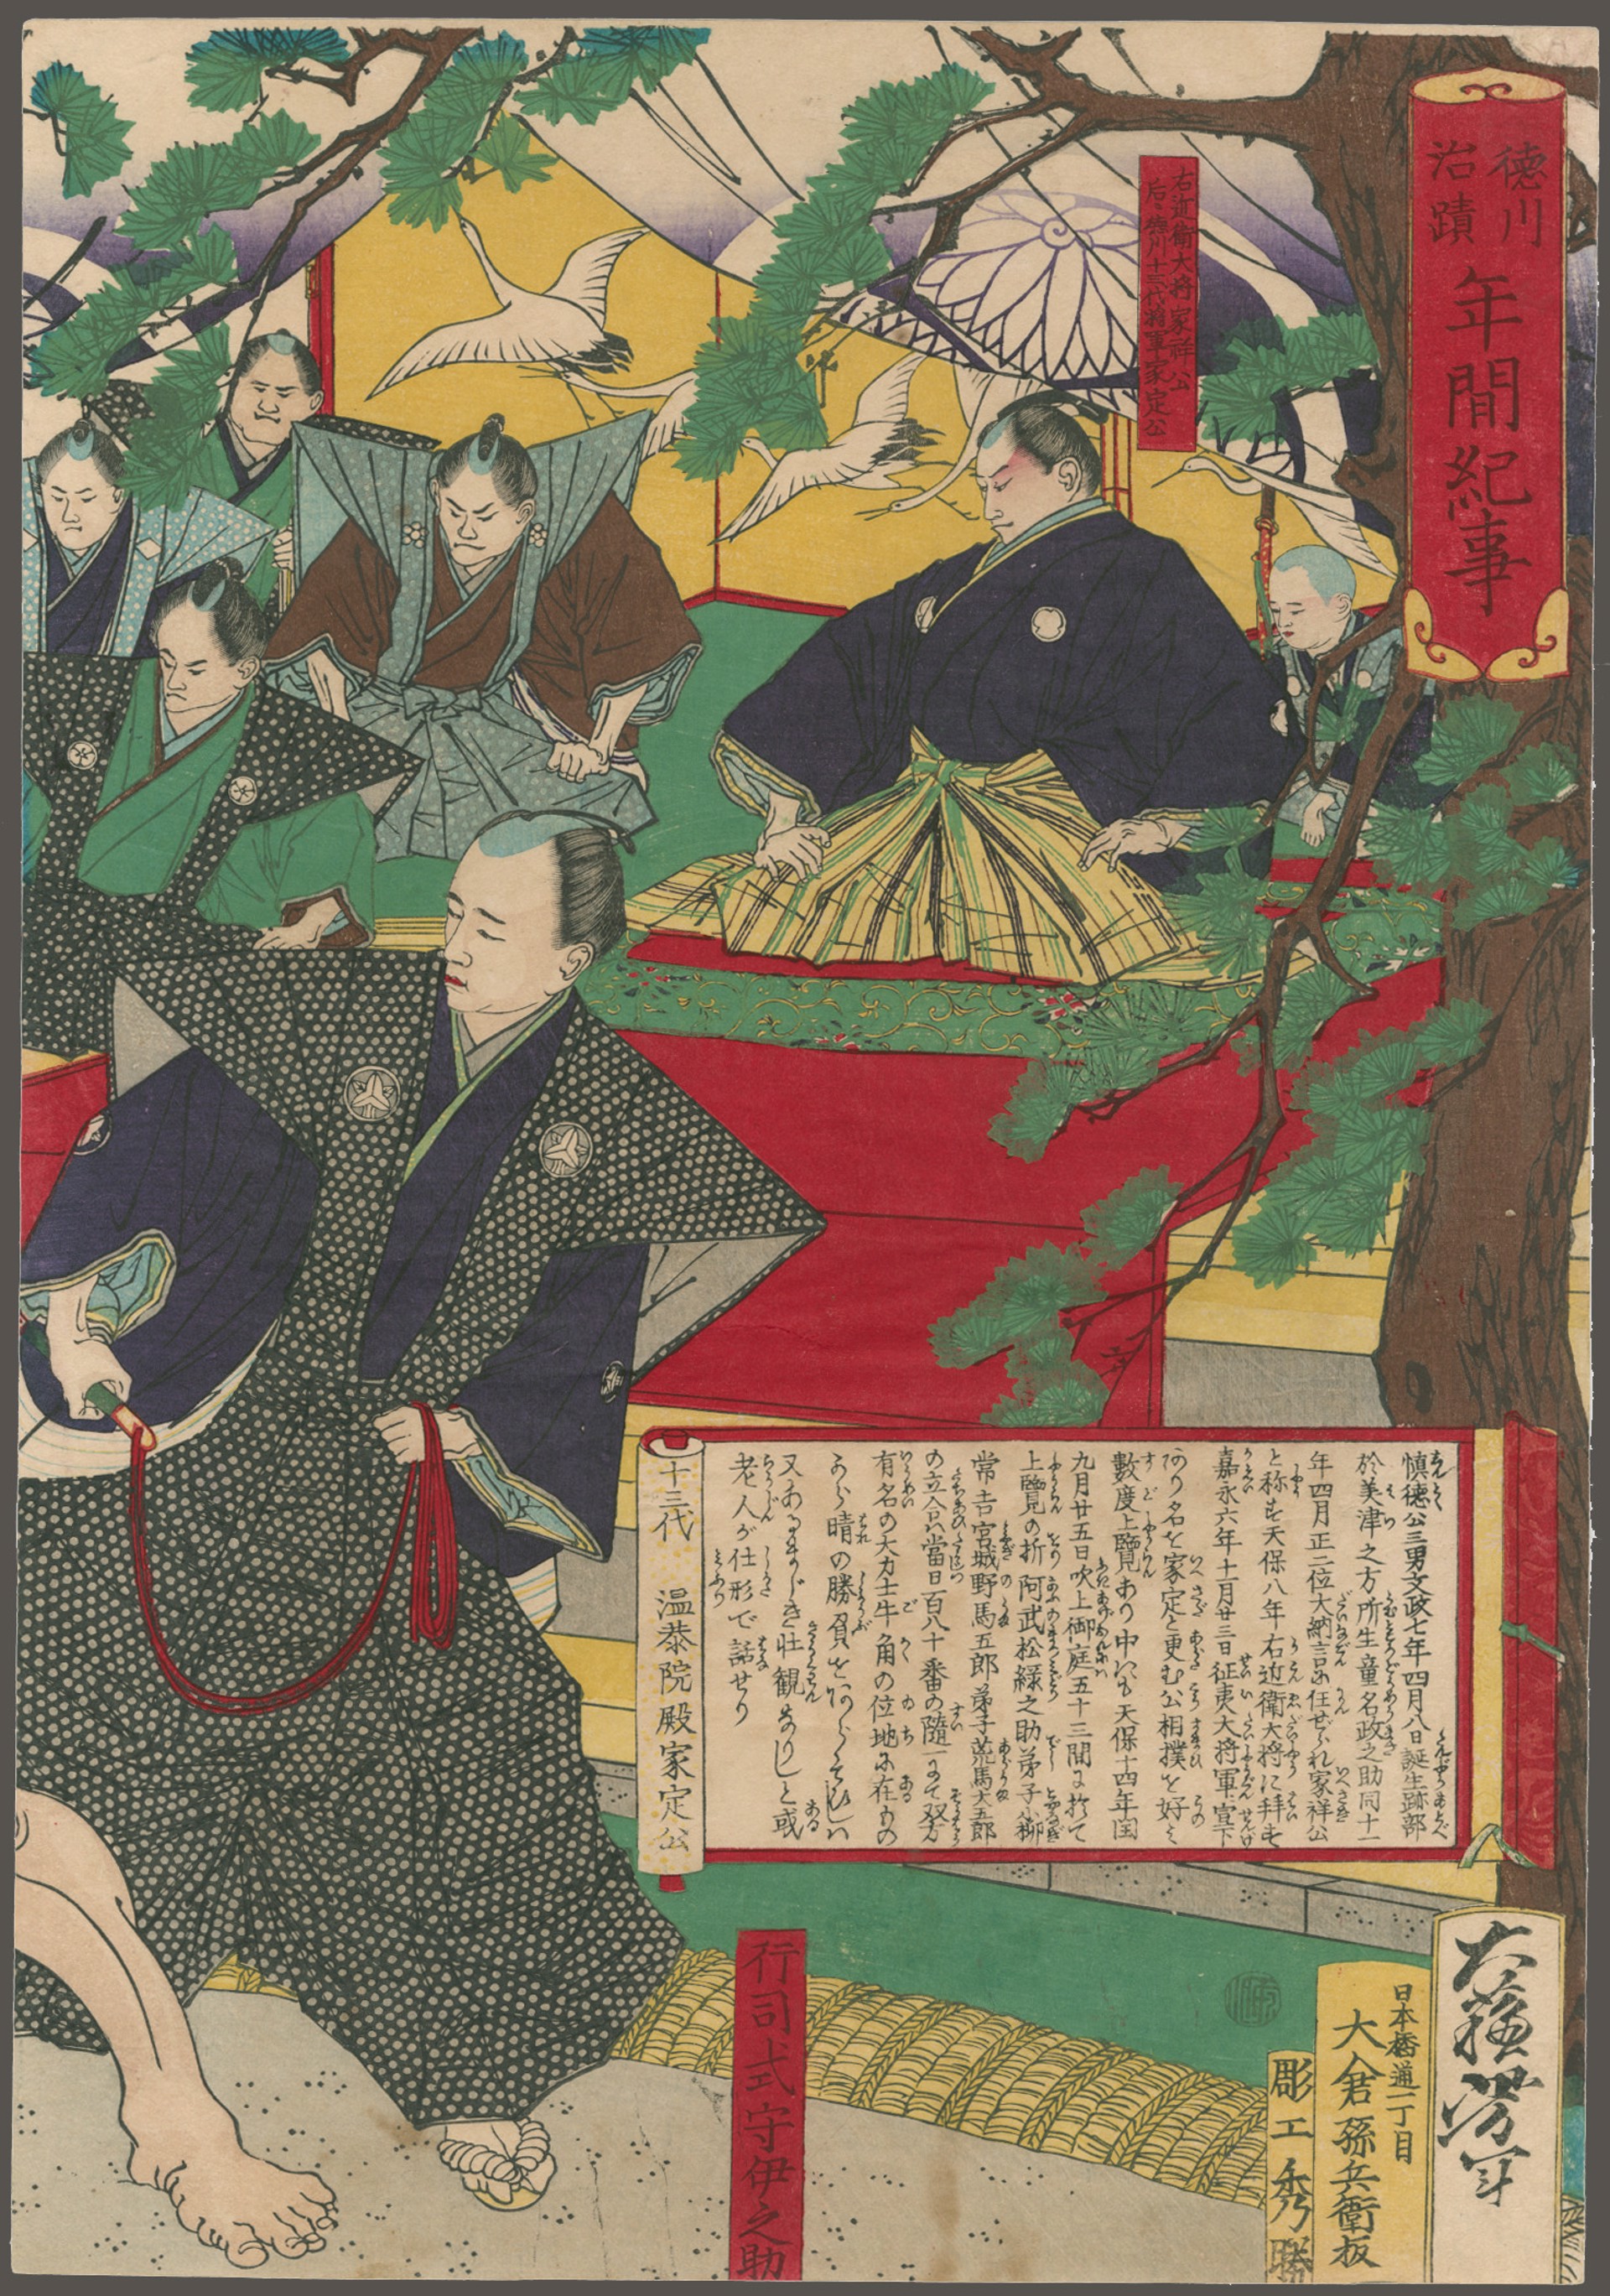 Ieasada, the 13th Shogun, Watching a Sumo Match Between Koyonagi Jokichi and aruma Daigoro at Fukiage Garden Annals of the Tokugawa Administration by Yoshitoshi